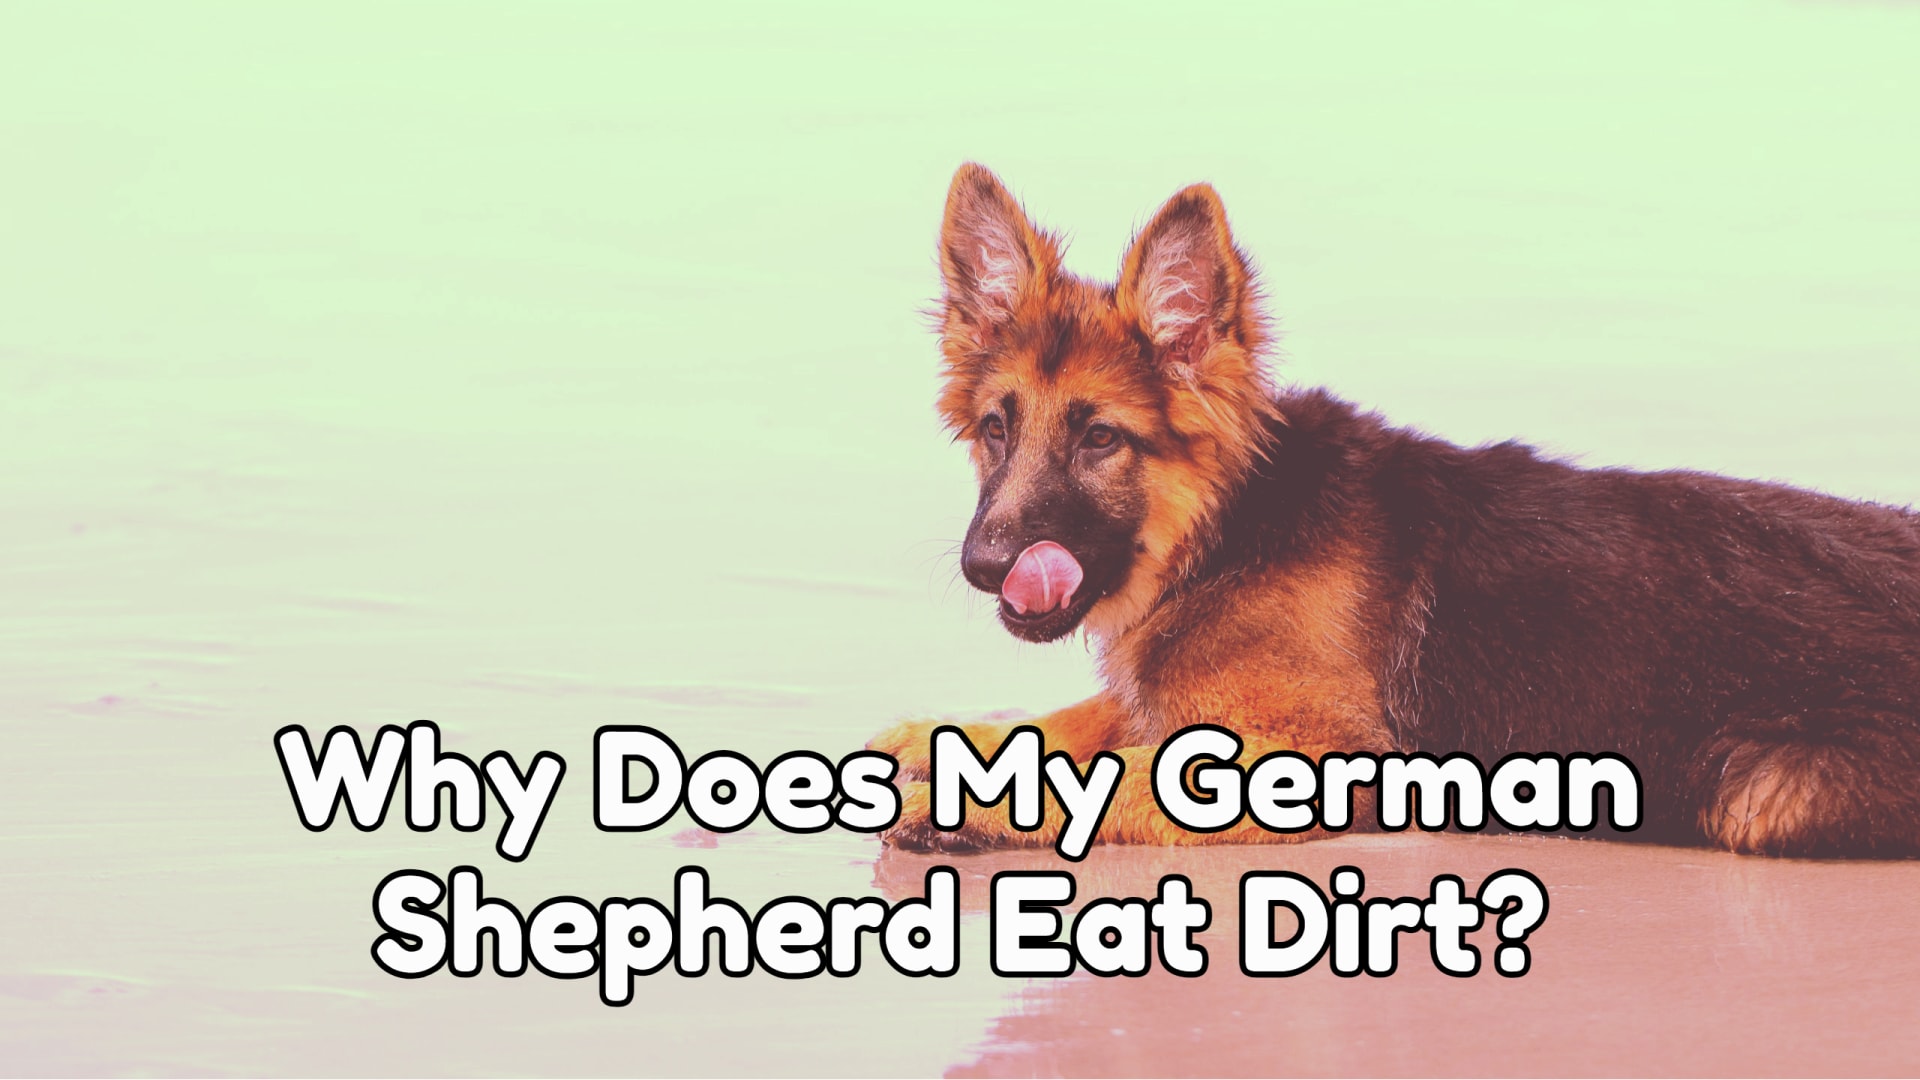 Why Does My German Shepherd Eat Dirt?